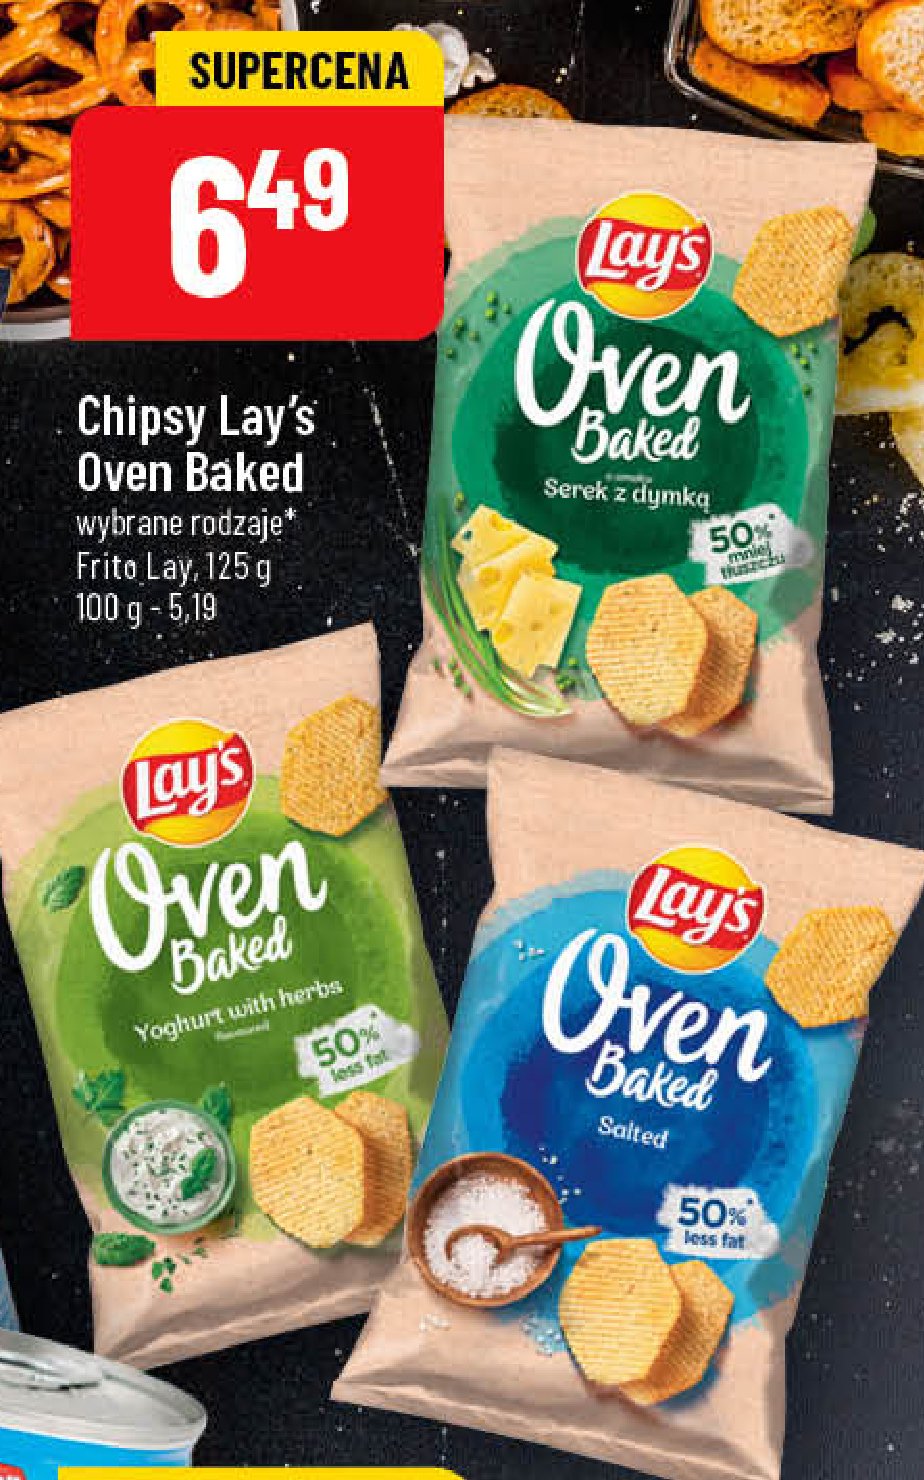 Chipsy serek z dymką Lay's oven baked (prosto z pieca) Frito lay lay's promocja